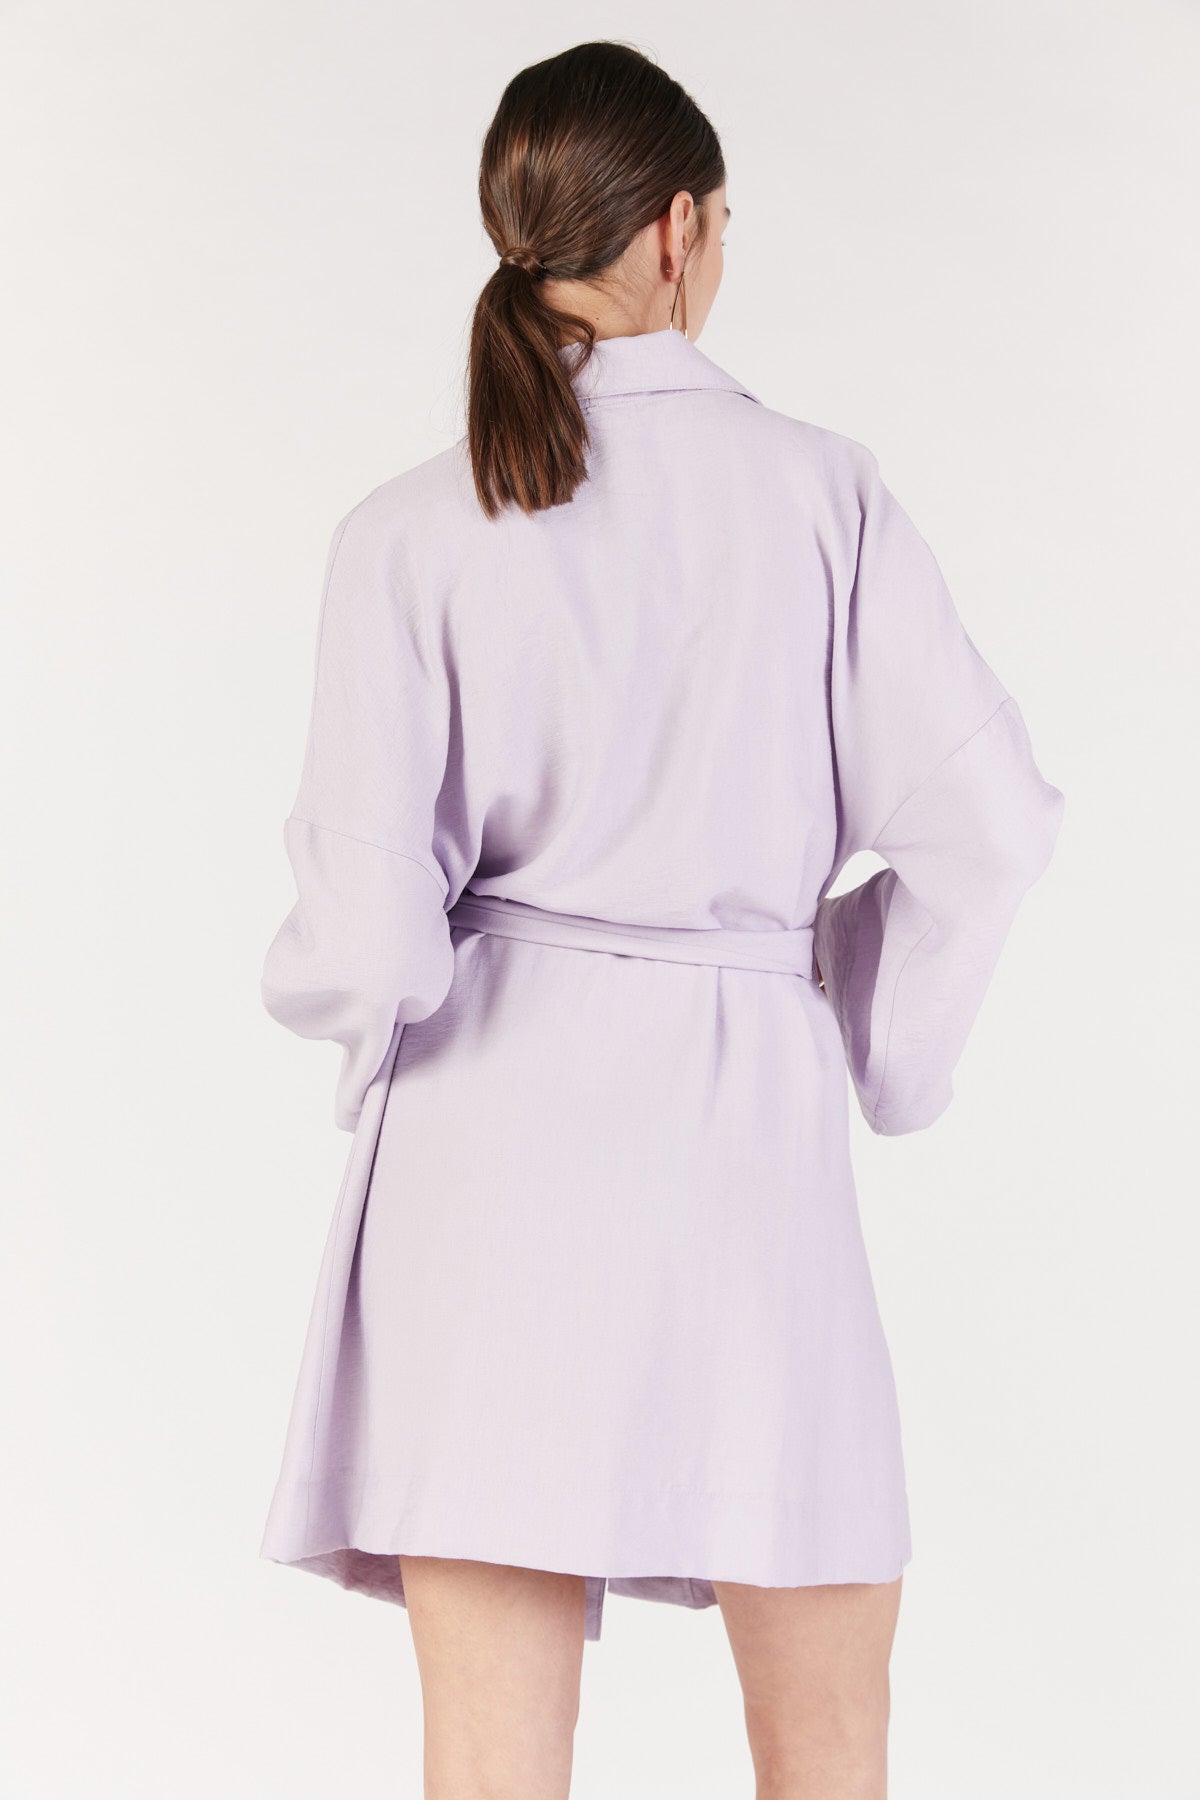 שמלת מיני אפרודיט בצבע לילך - Re